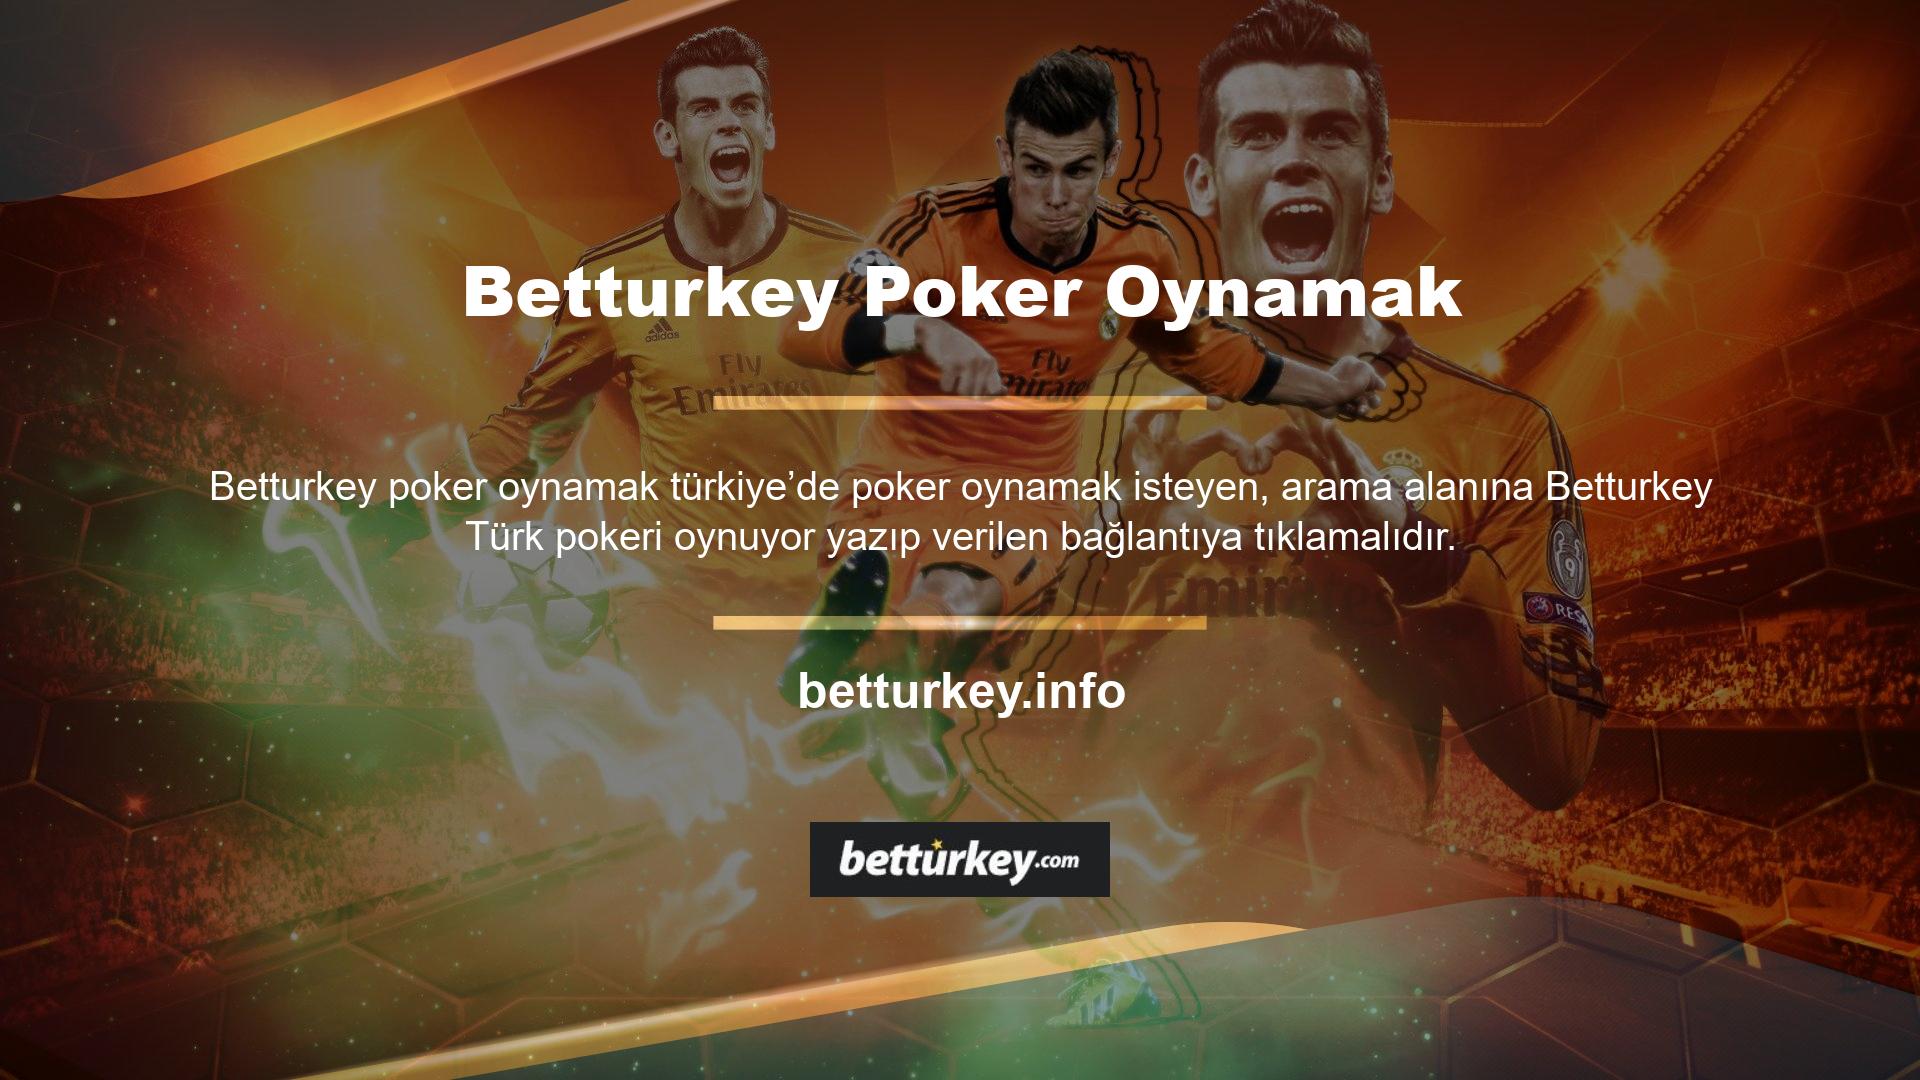 Betturkey web sitesi, Türk kullanıcıların poker oynama konusunda yetenekli olması nedeniyle Türkçe poker oyunları sunmaktadır